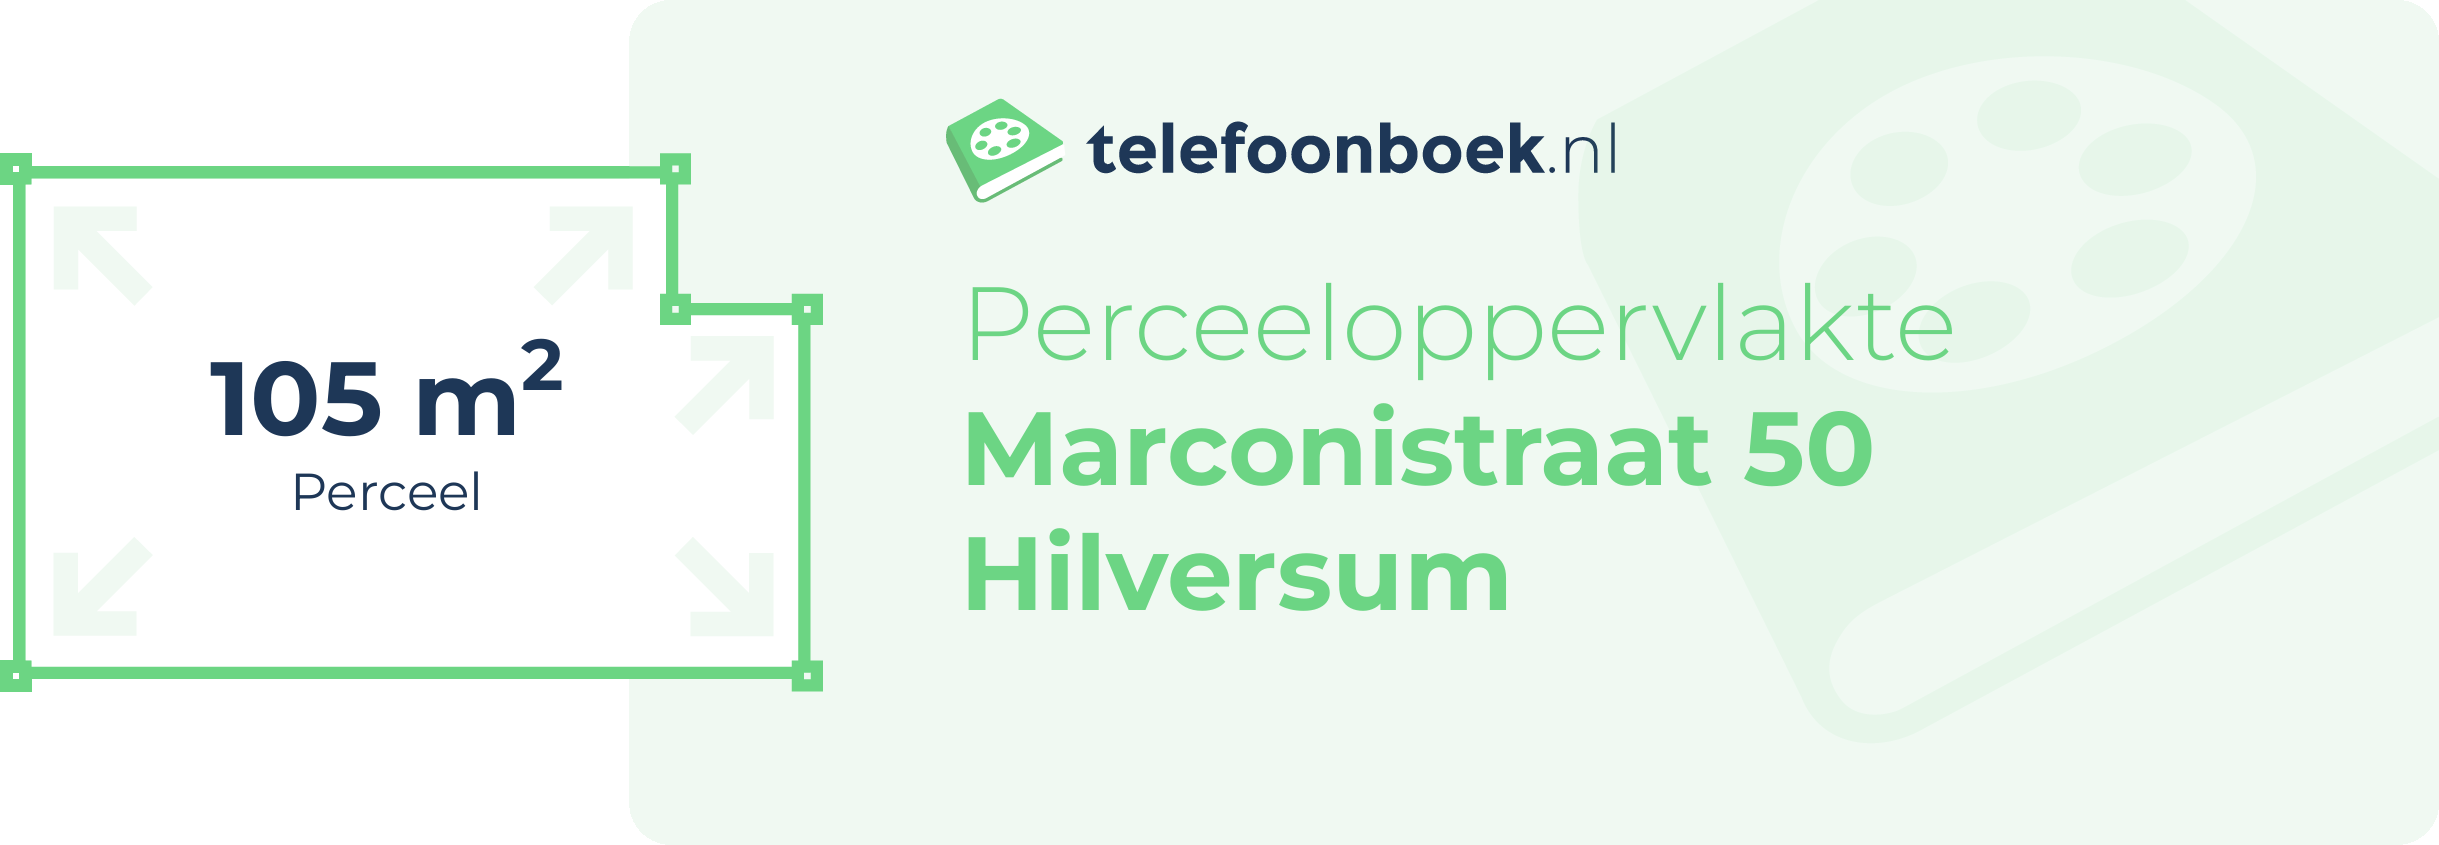 Perceeloppervlakte Marconistraat 50 Hilversum